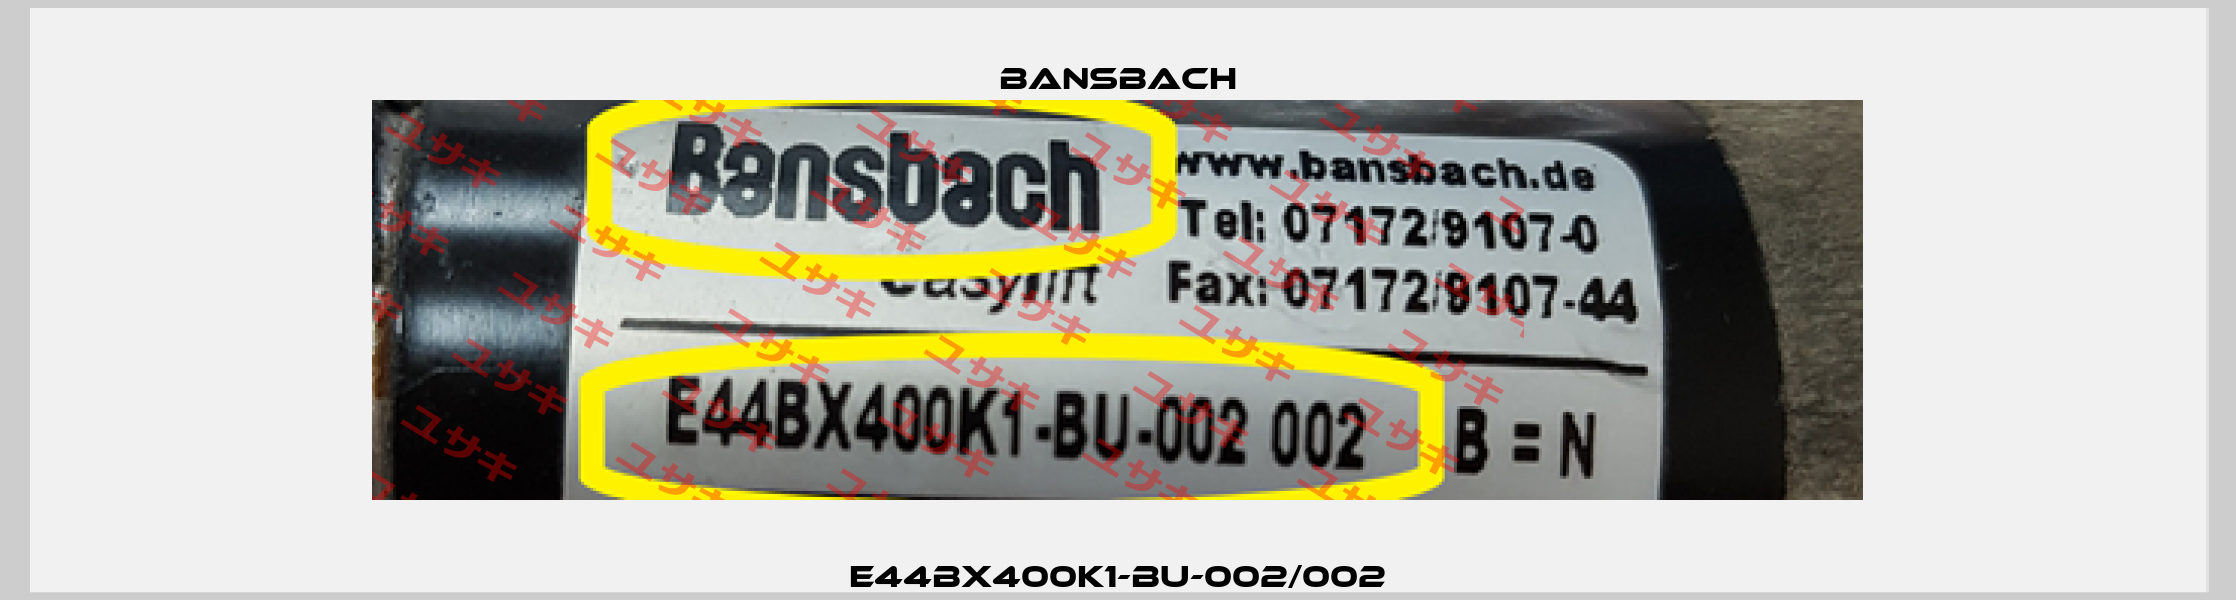 E44BX400K1-BU-002/002 Bansbach